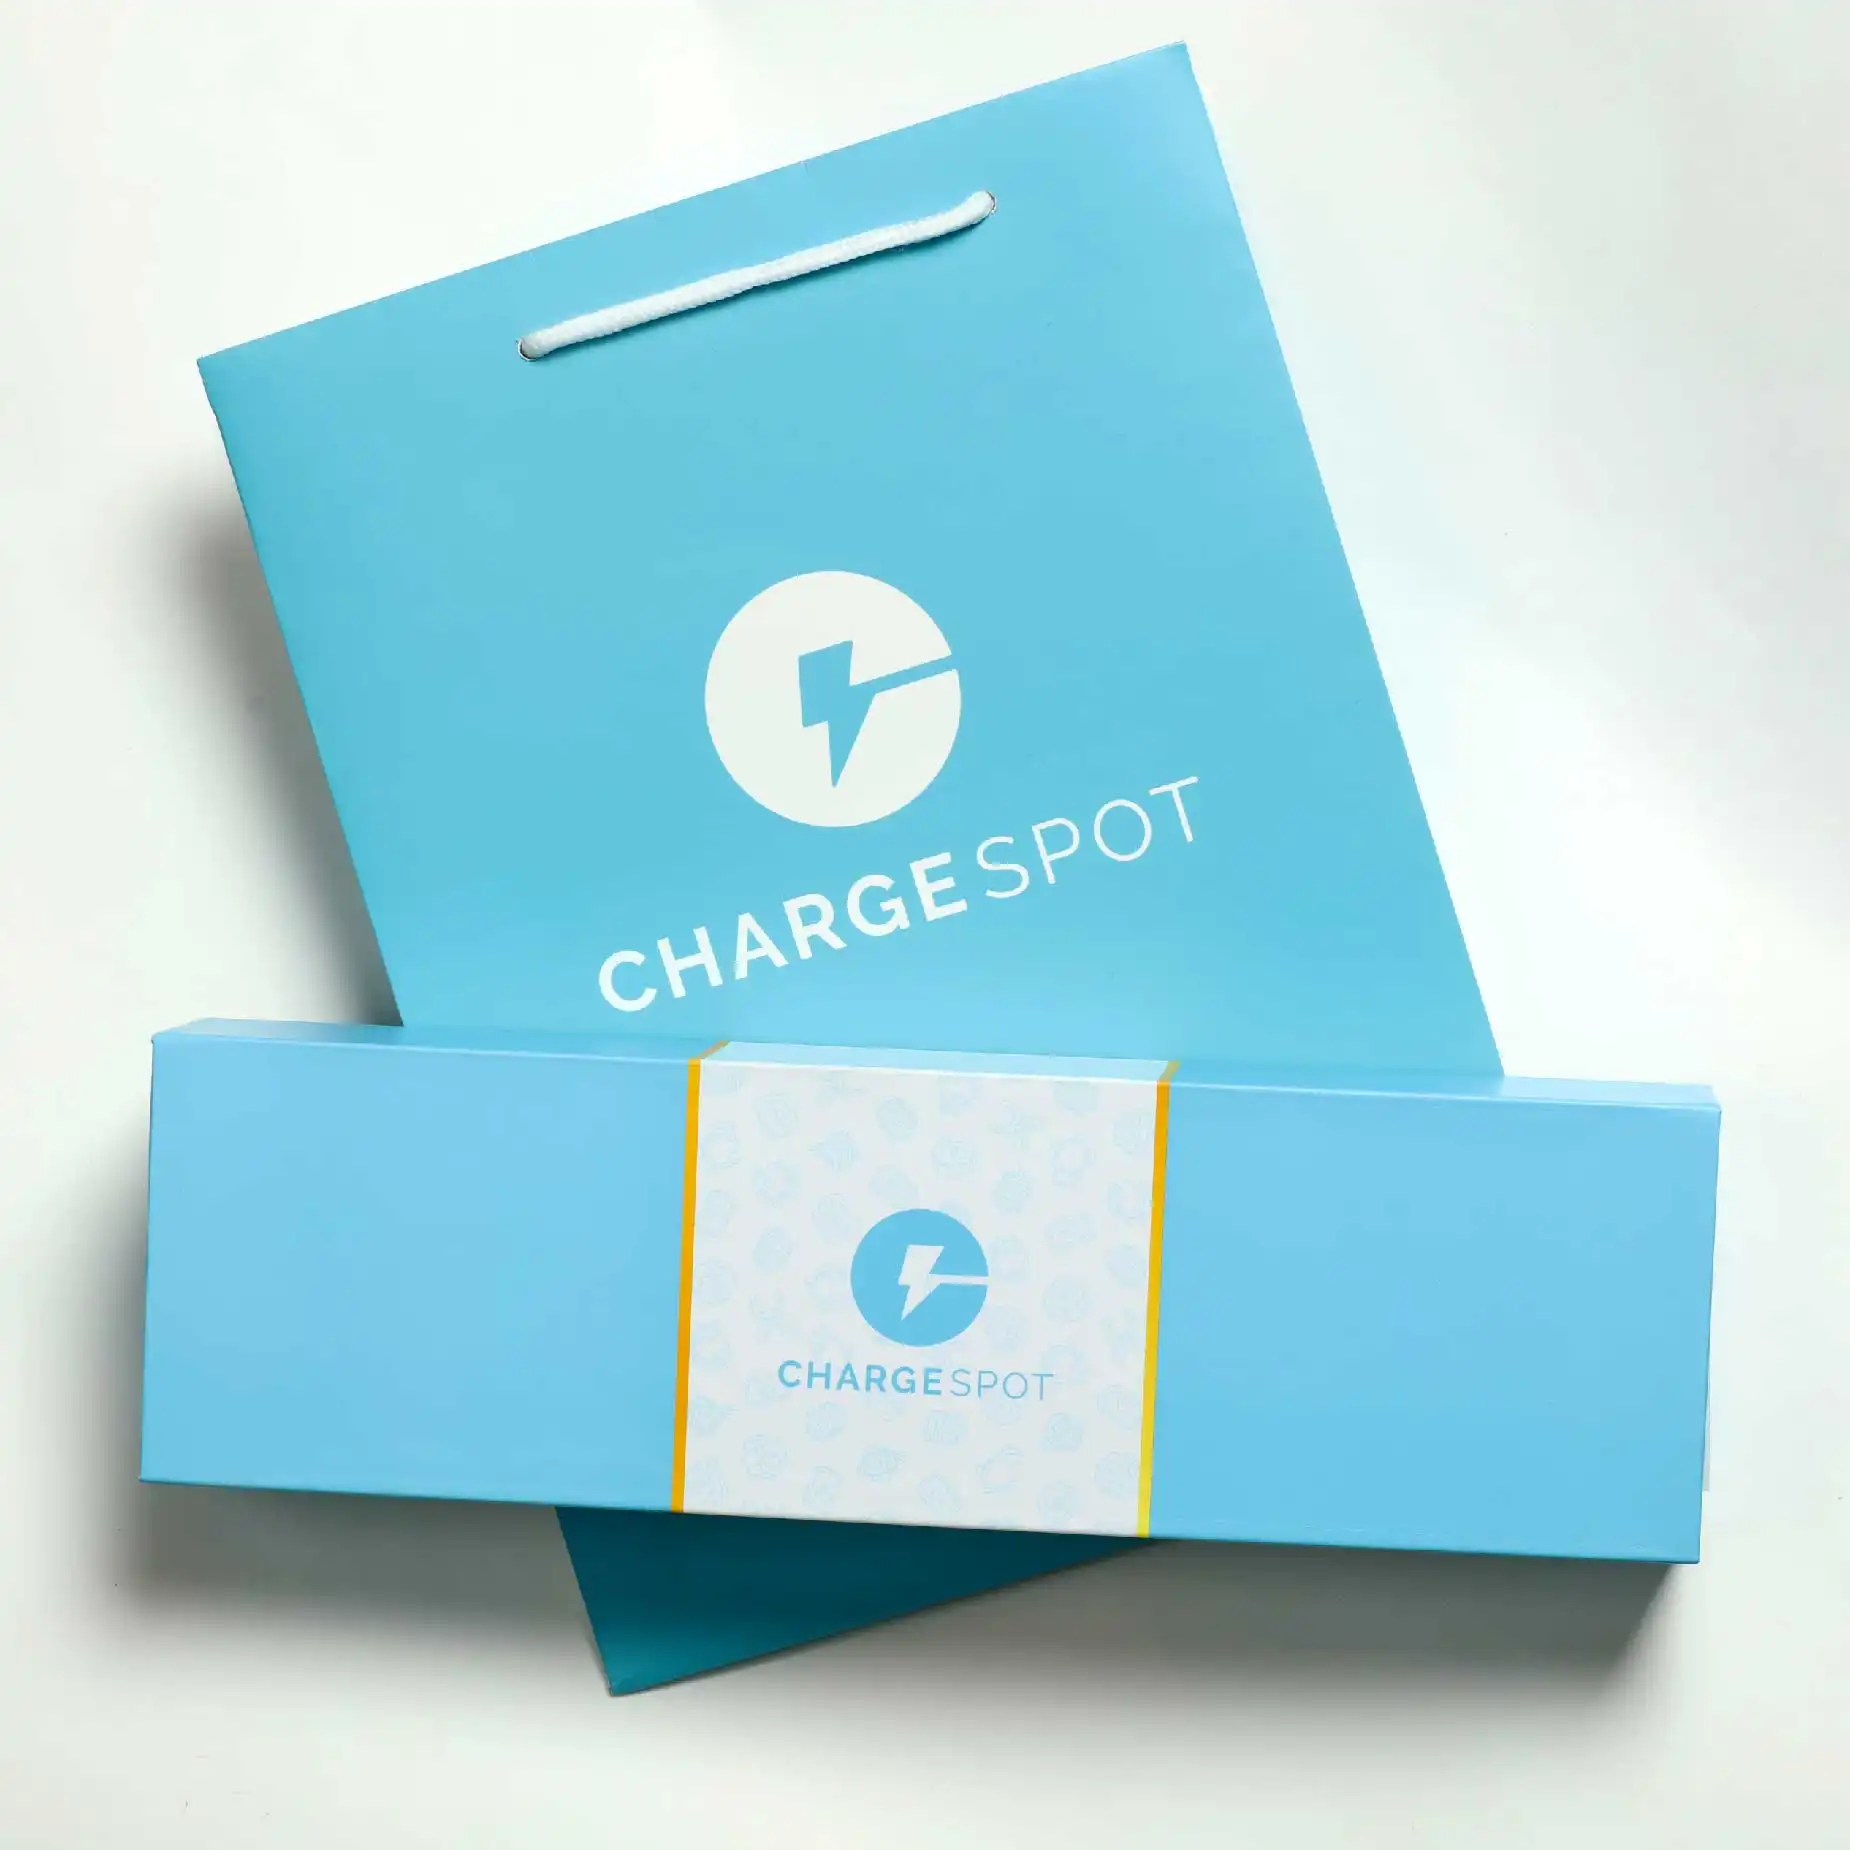 在白色的背景下，擺放了一個淺藍色的磁石書型硬盒，盒面印有"Chargespot"的字眼和商標，而盒的後方擺放了一個淺藍色的包裝袋。